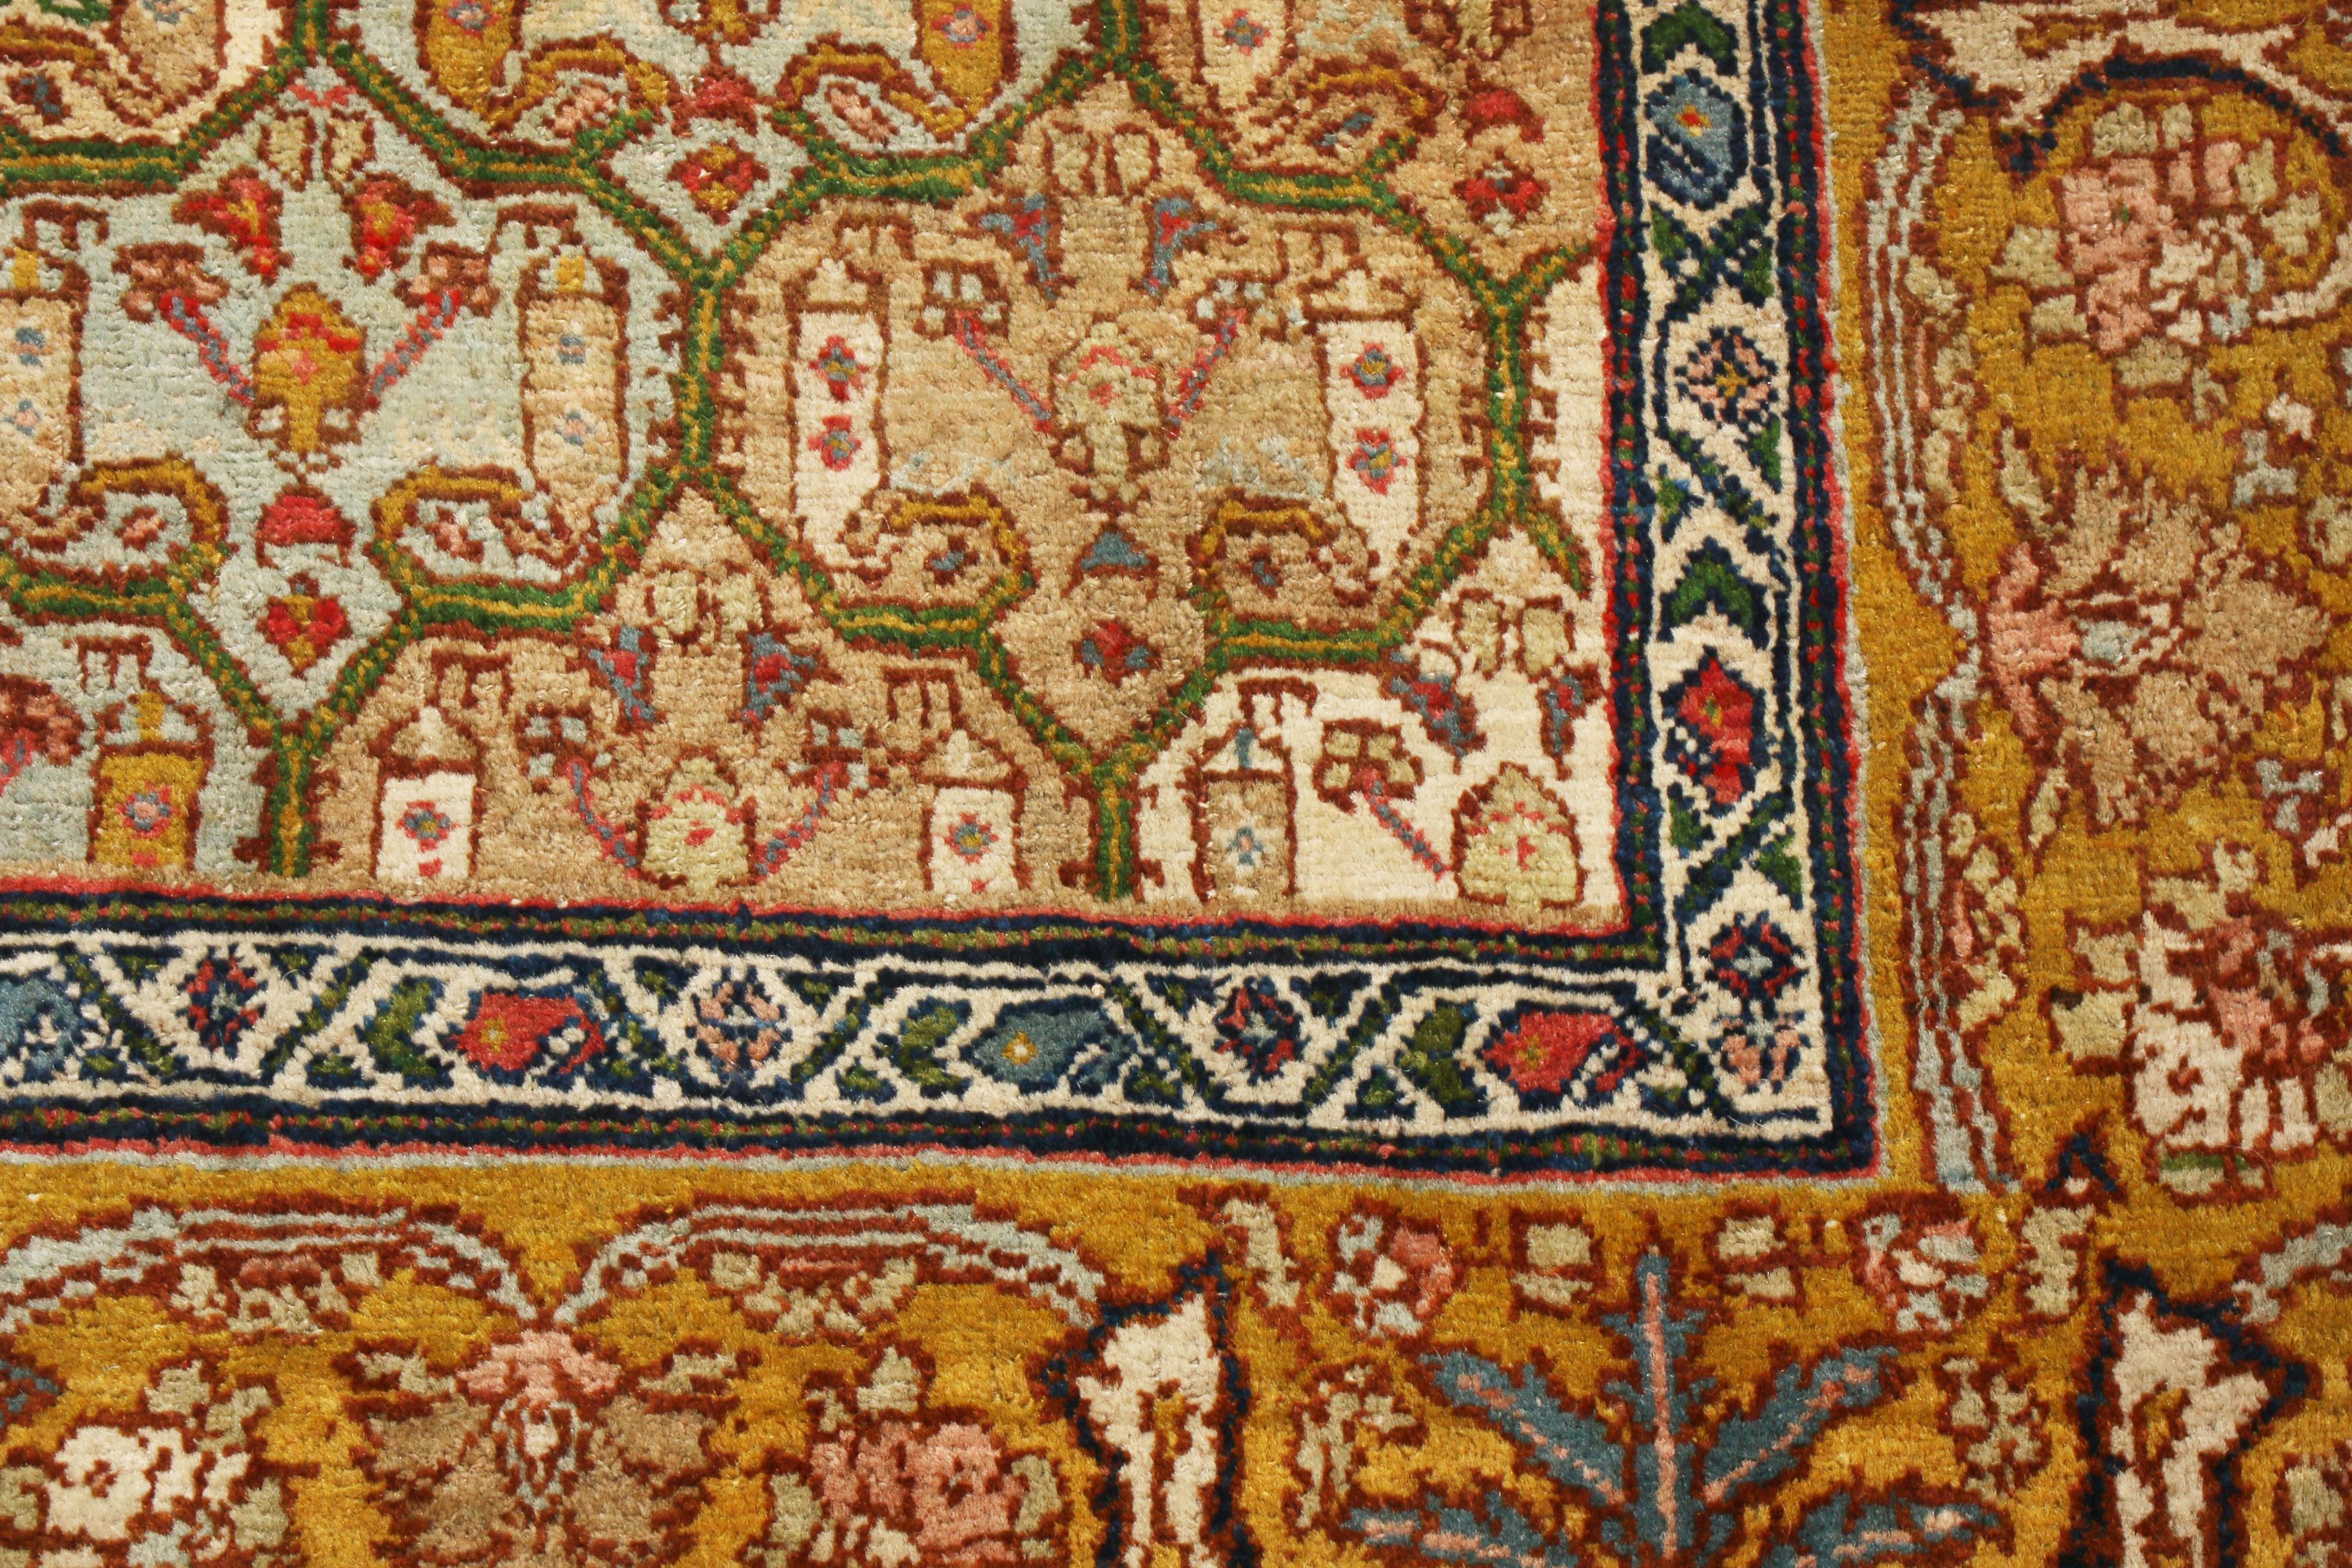 Israeli Antique Jerusalem Blue and Copper Brown Wool Floral Rug by Rug & Kilim For Sale